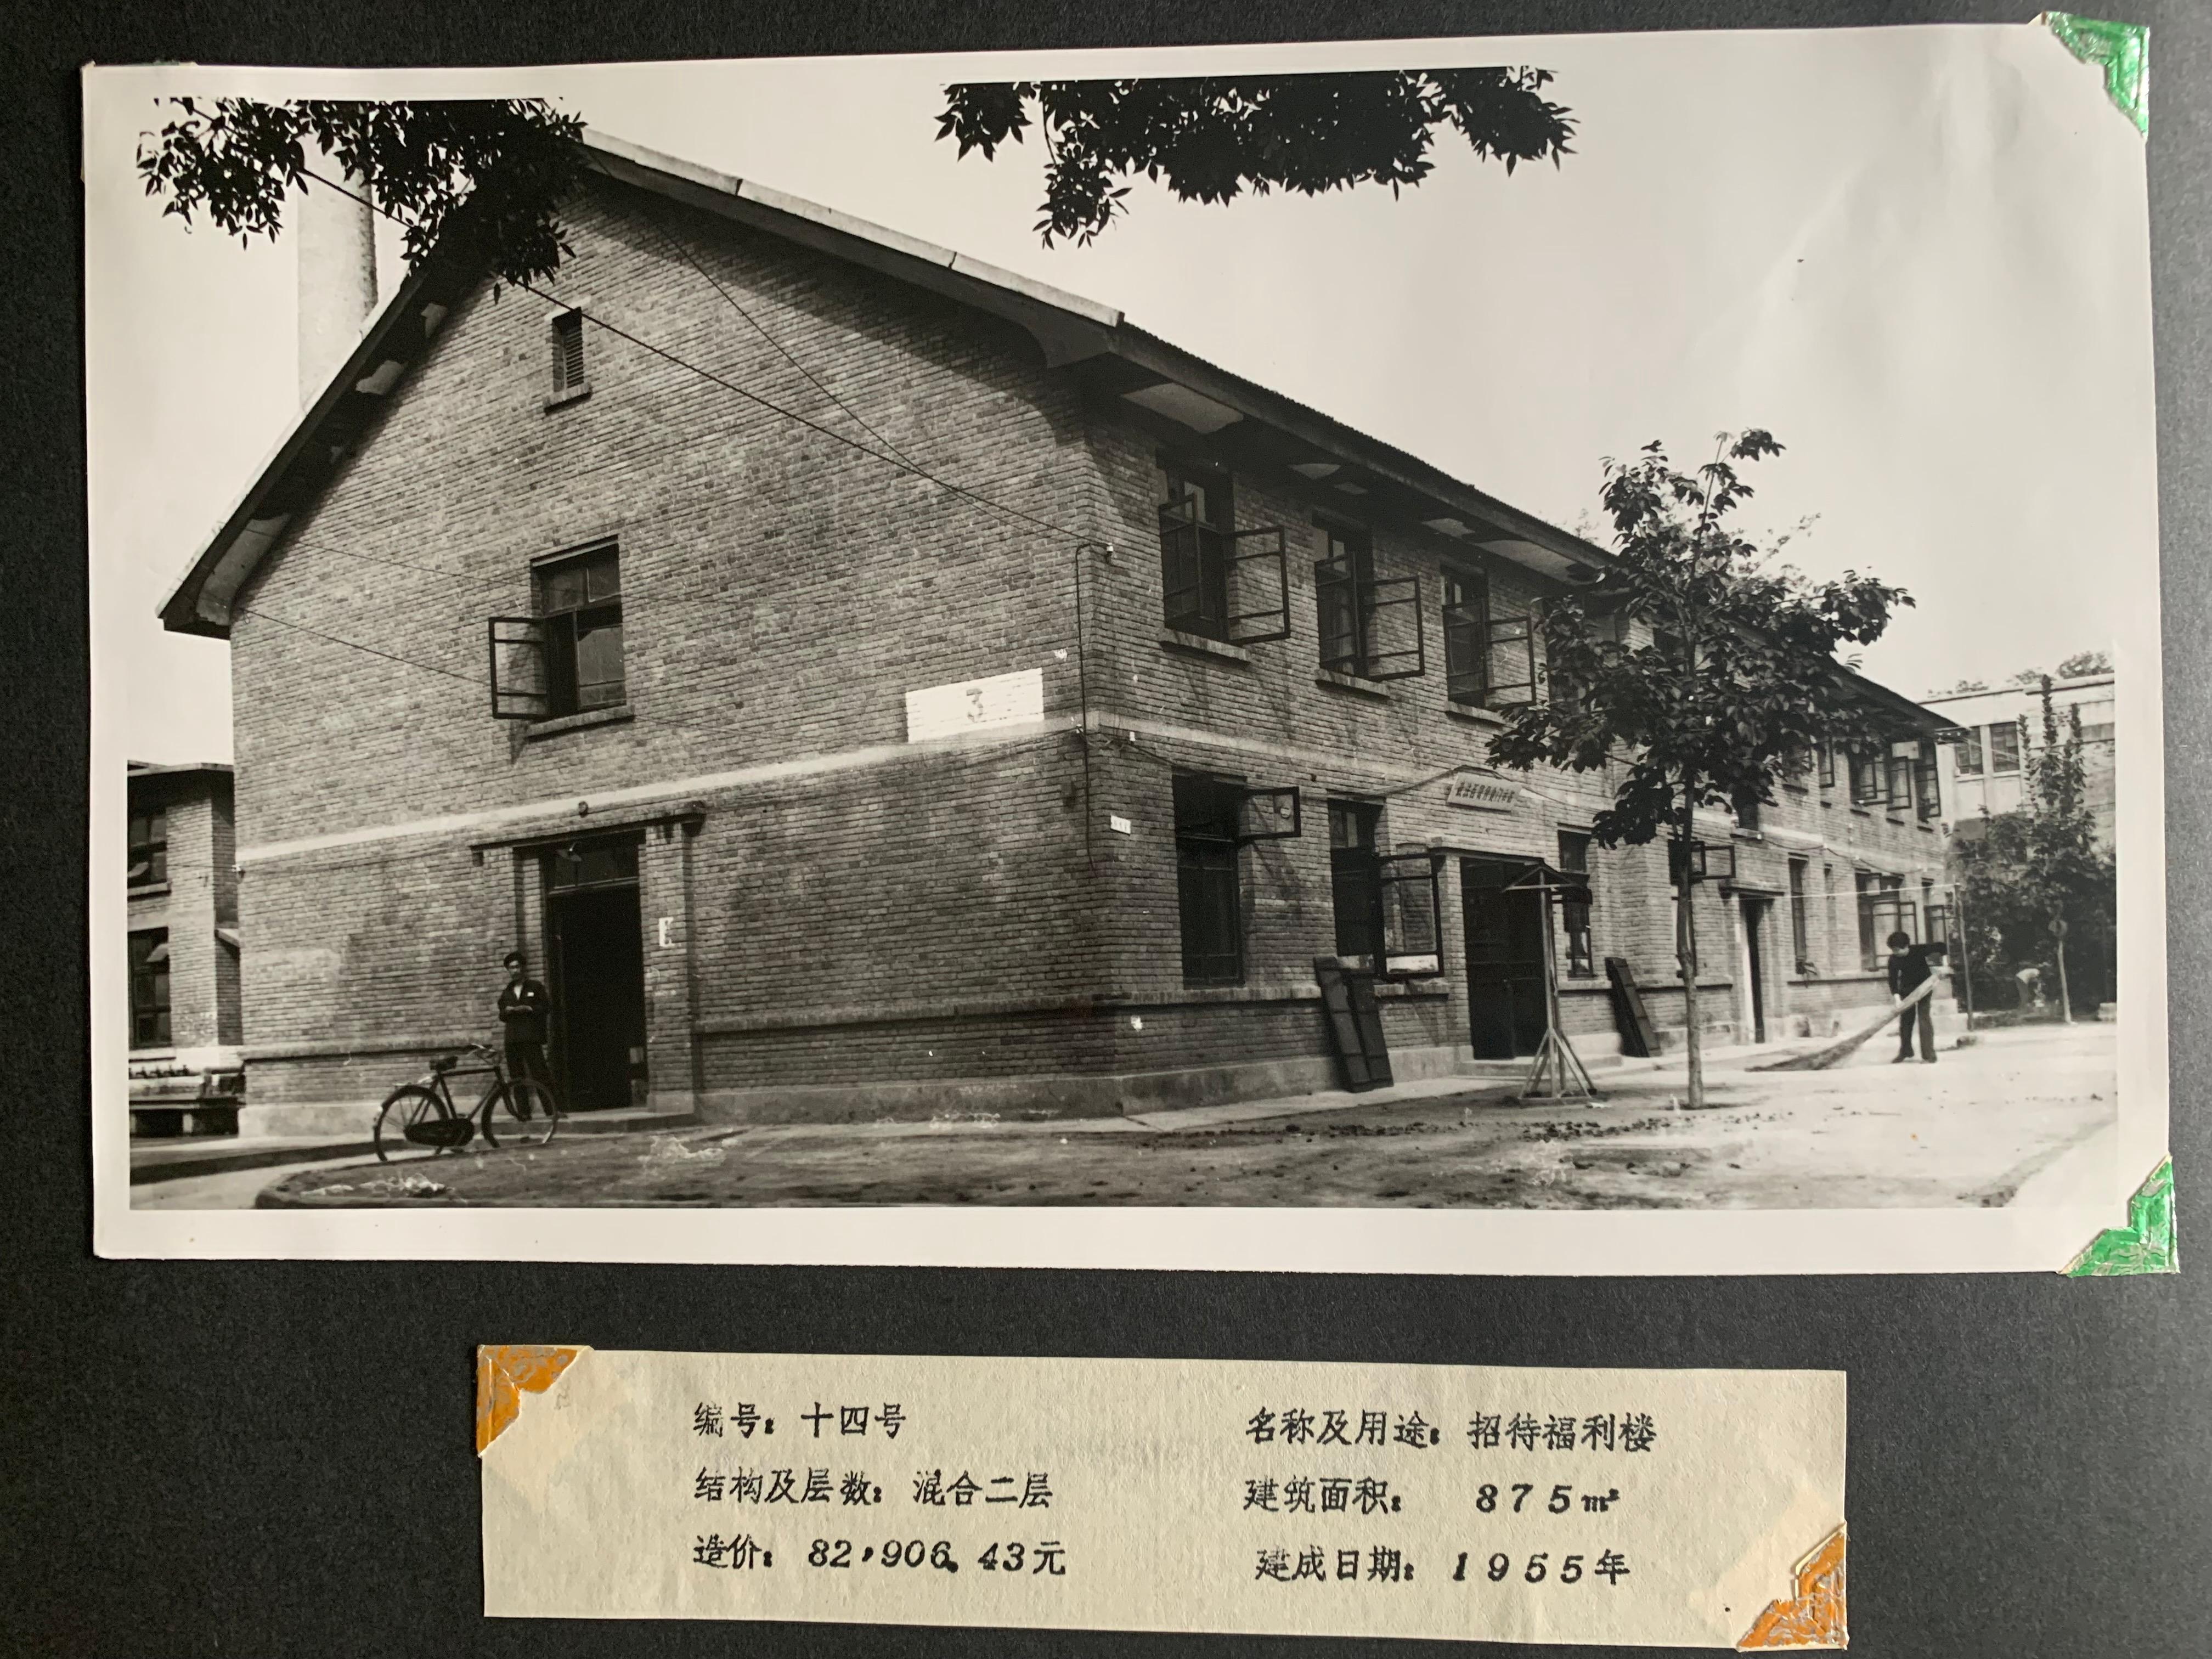 1955年建成的雁塔校区招待福利楼1.JPG